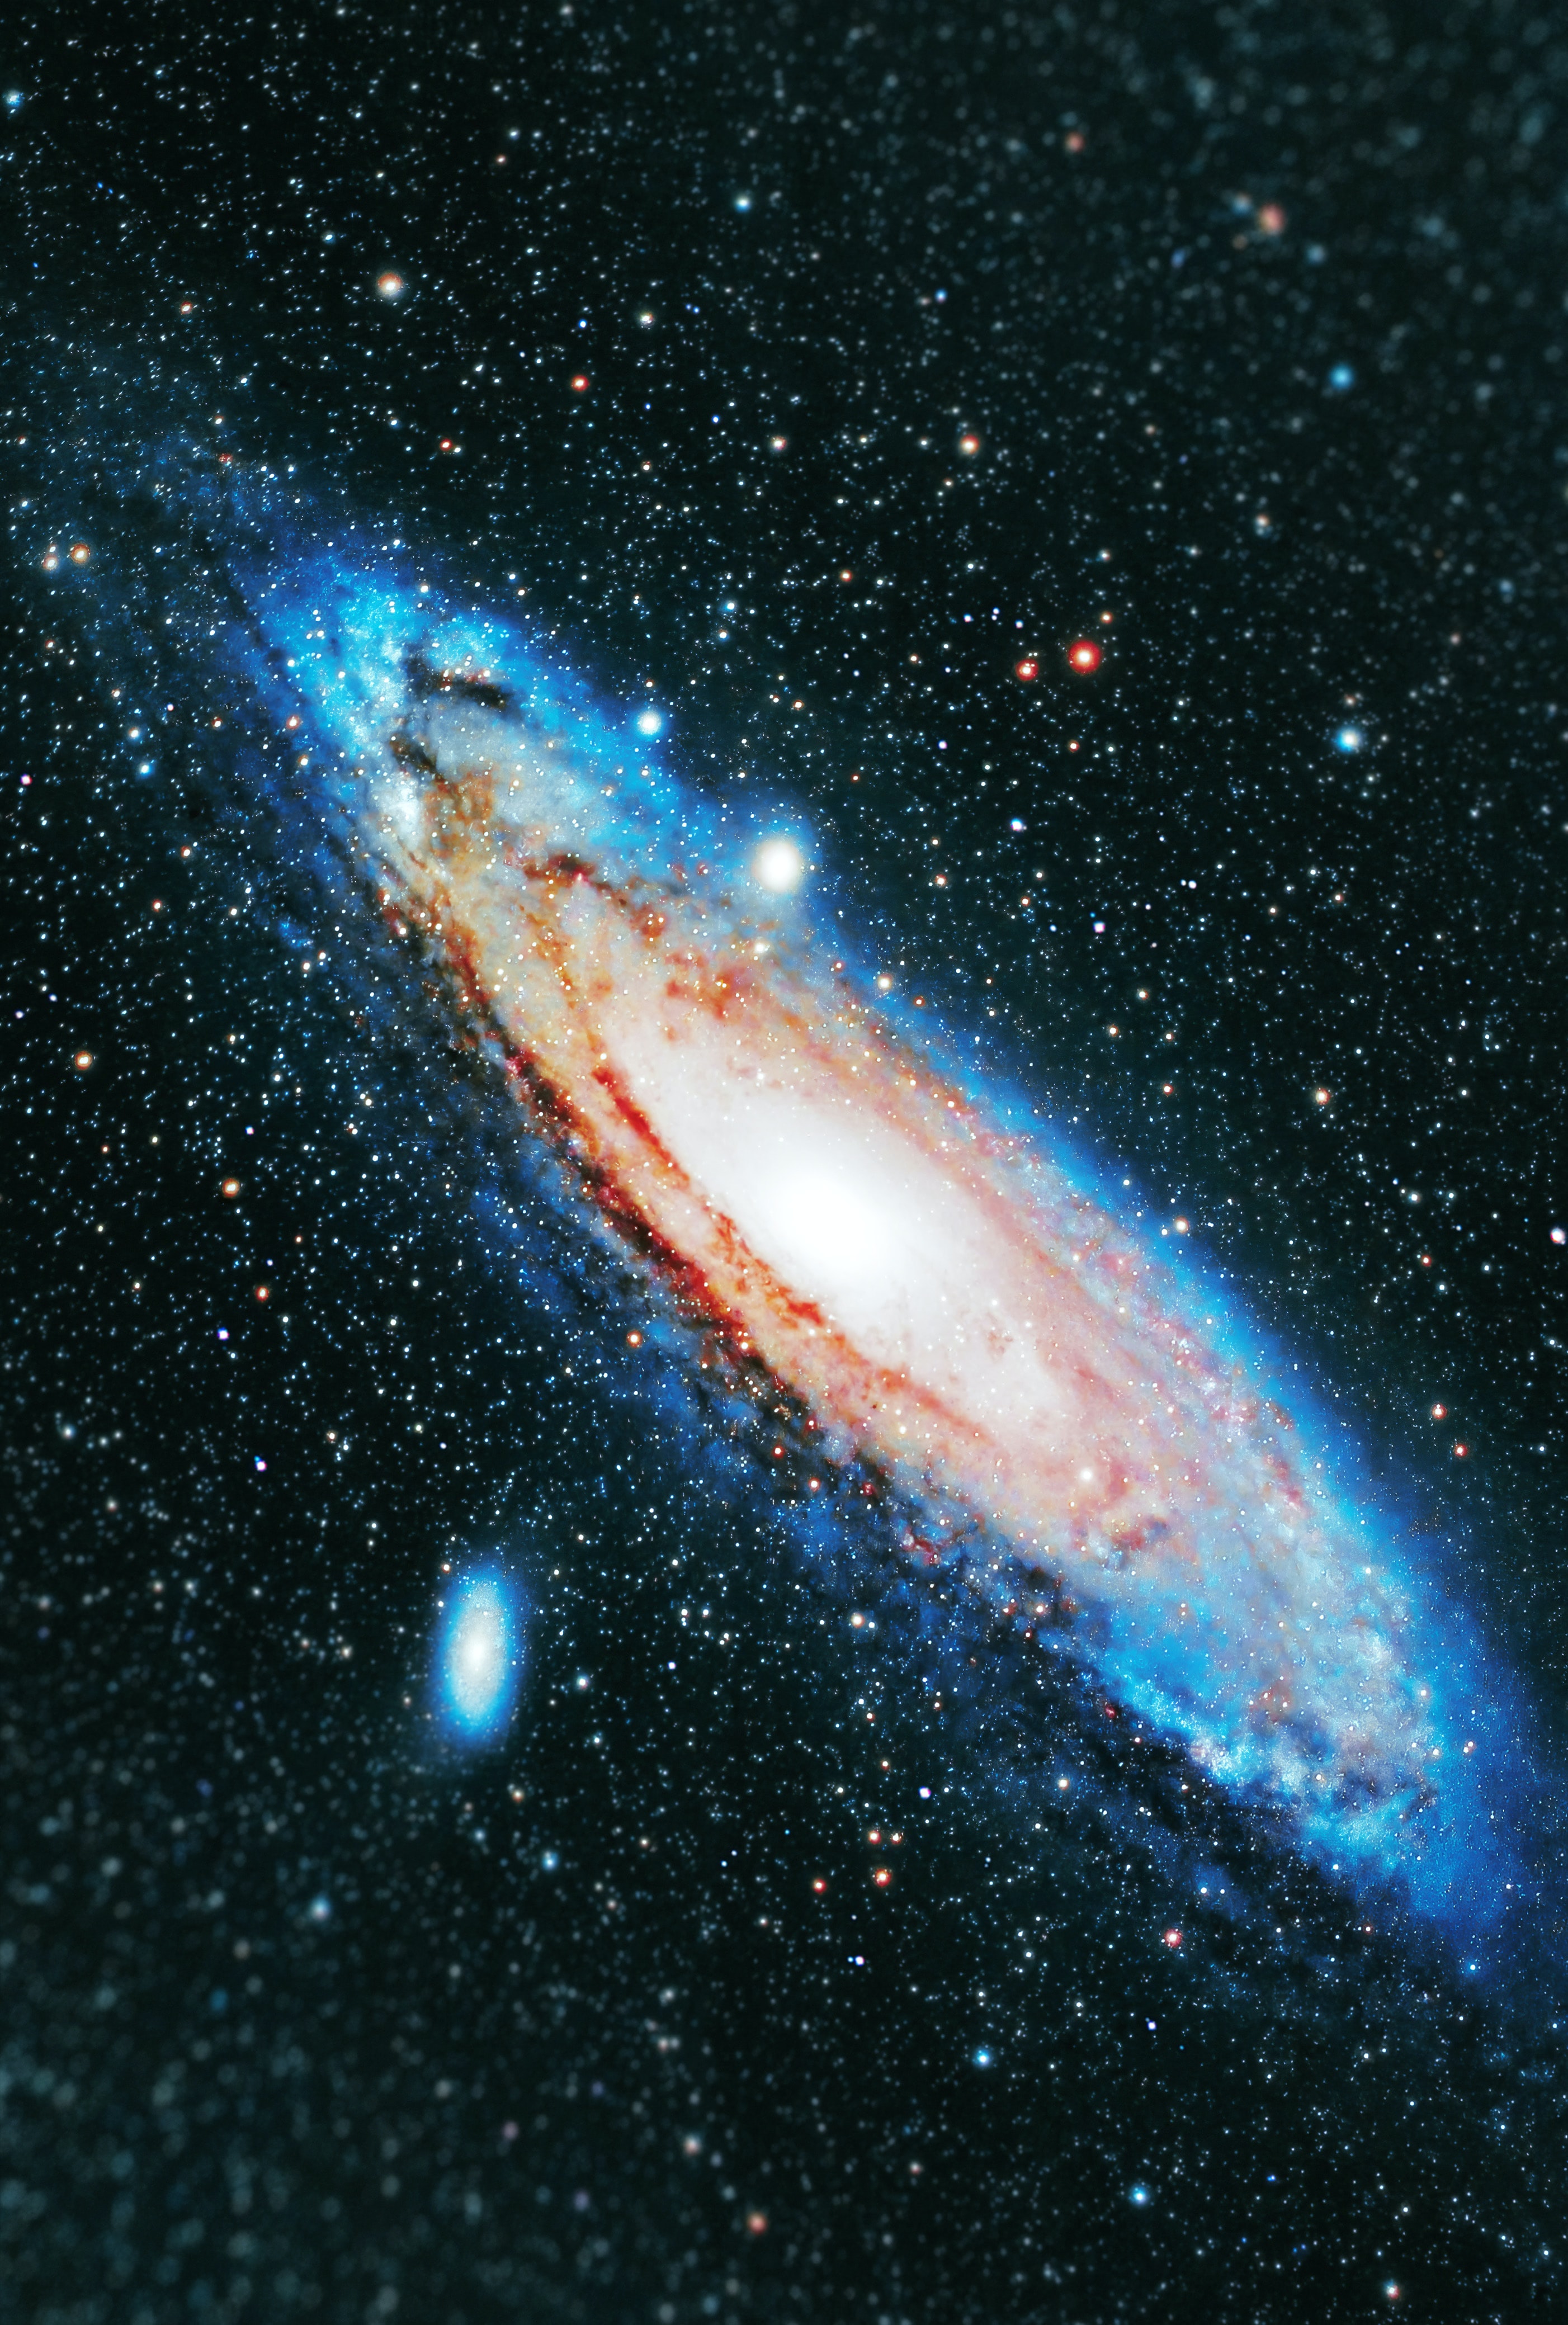 Скачать обои Галактика на телефон в высоком качестве, вертикальные  картинки Галактика бесплатно